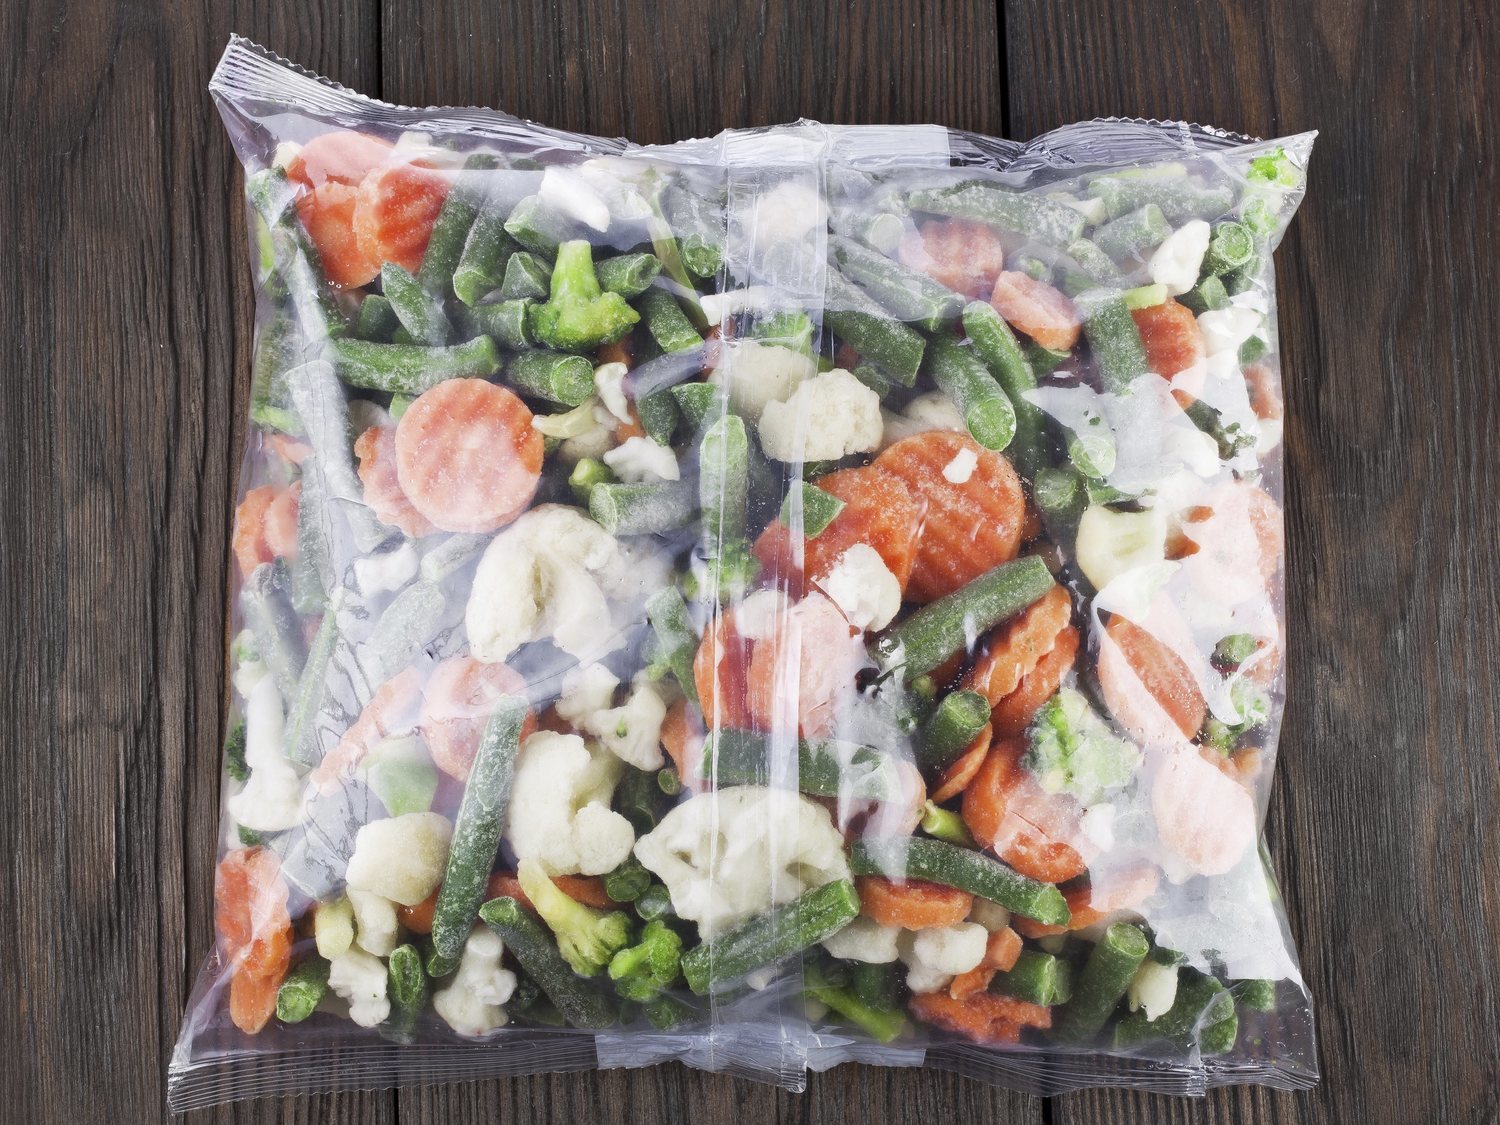 Alerta alimentaria: Sanidad retira de la venta estas verduras congeladas del supermercado